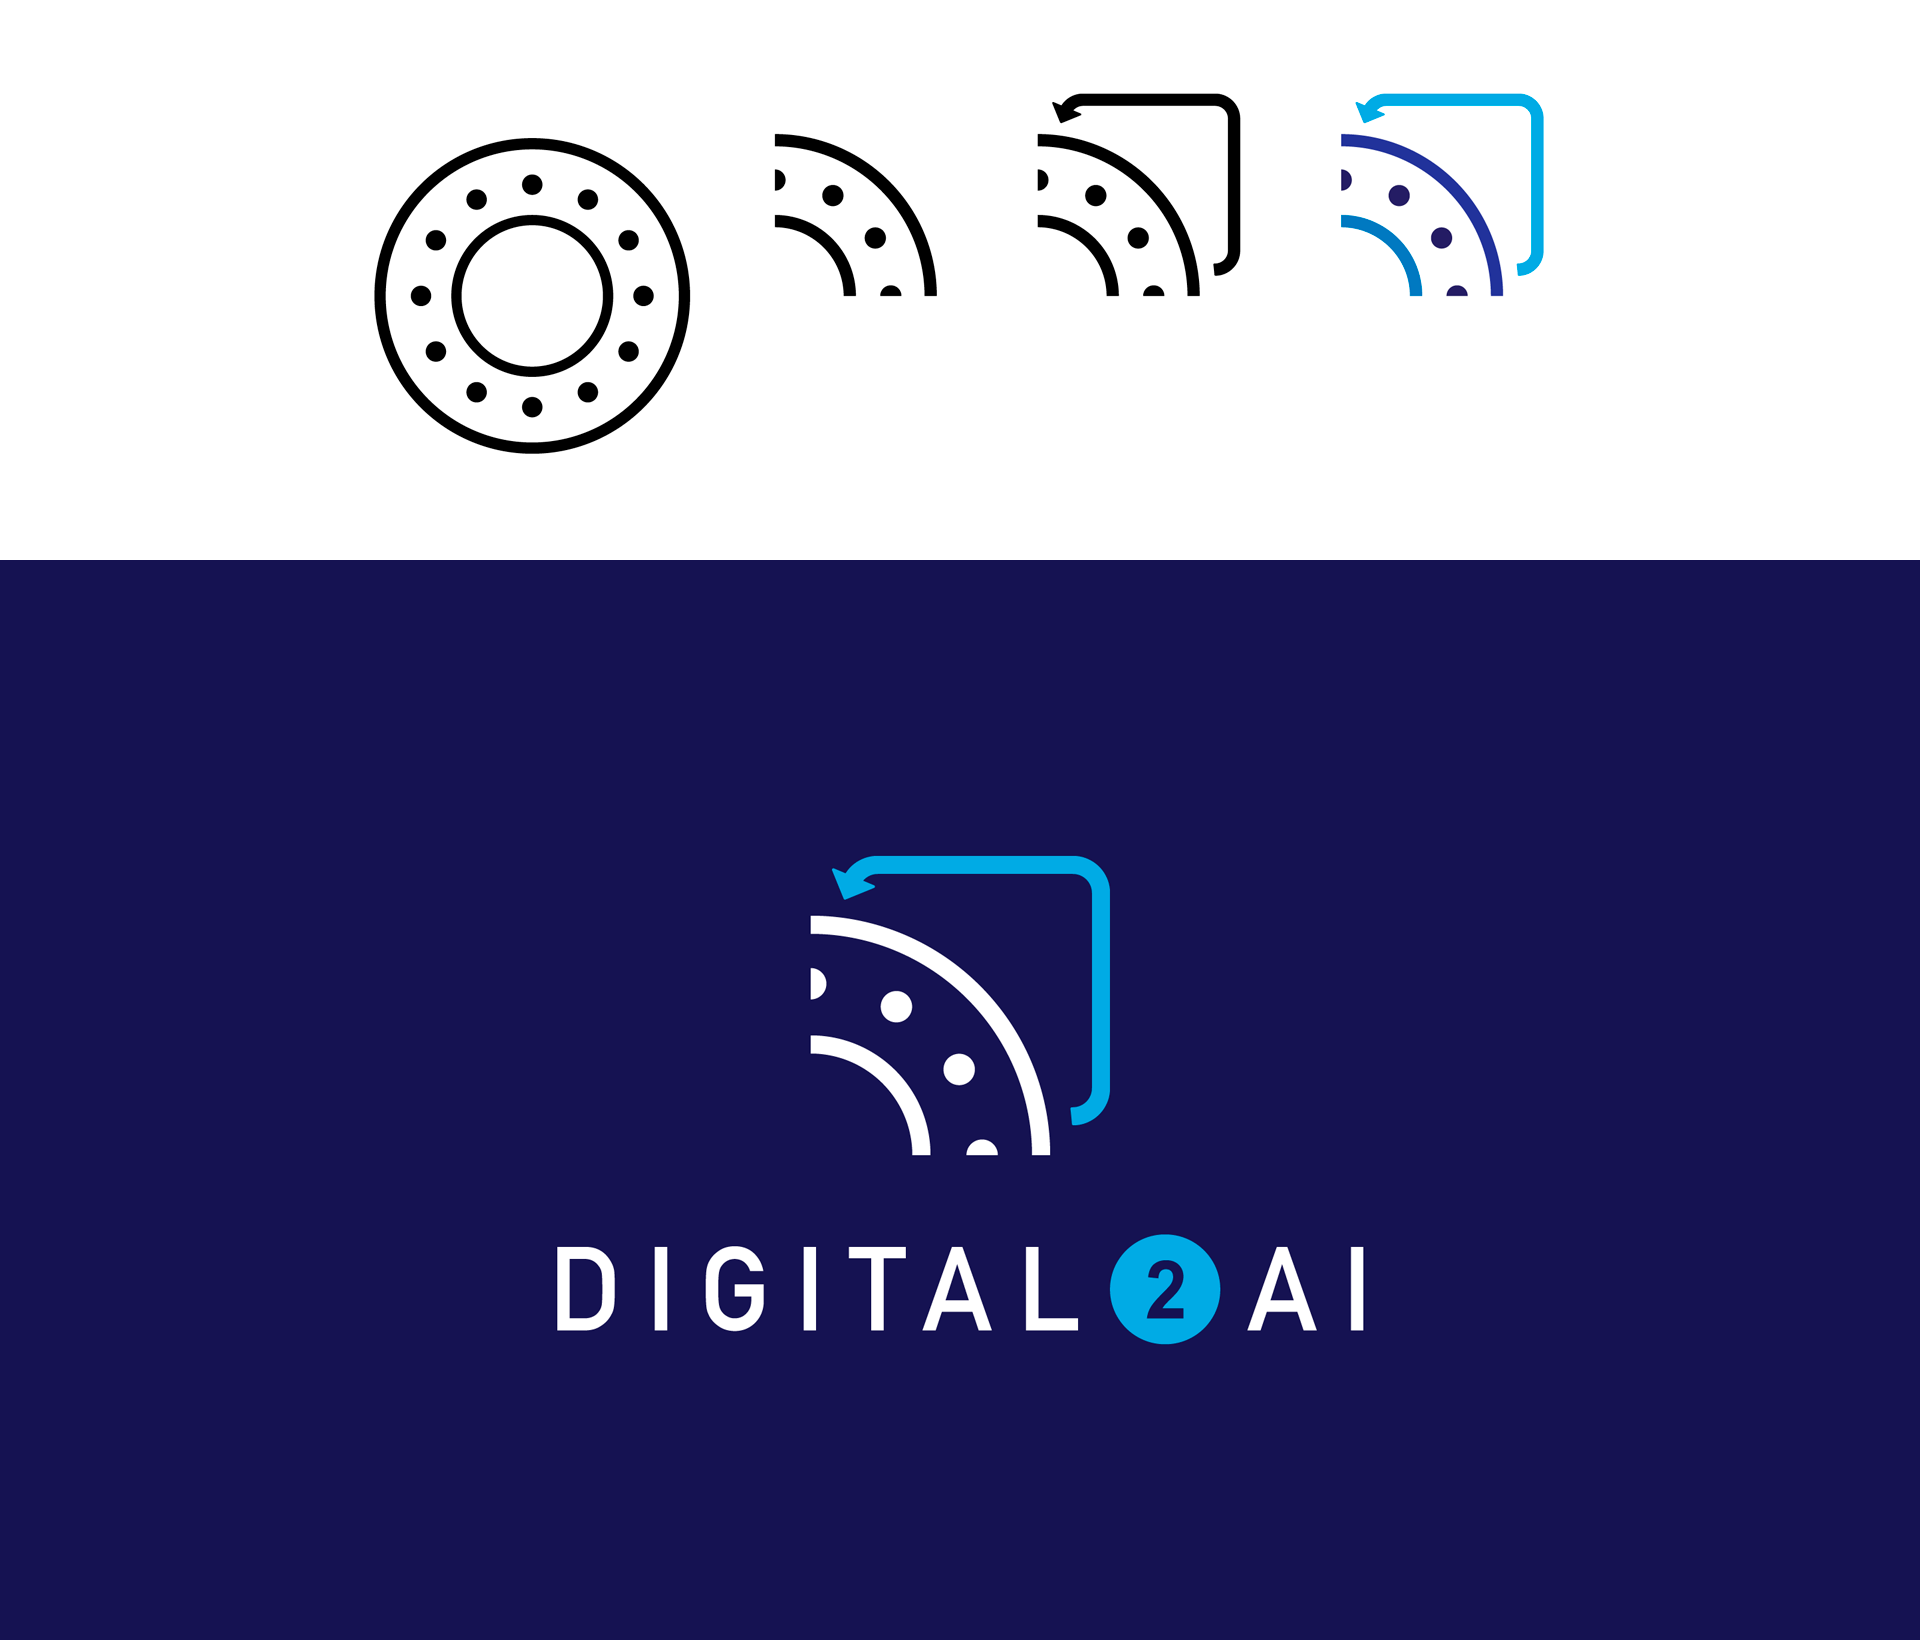 Criação da marca da startup Digital 2 AI, por Cristiano Valim